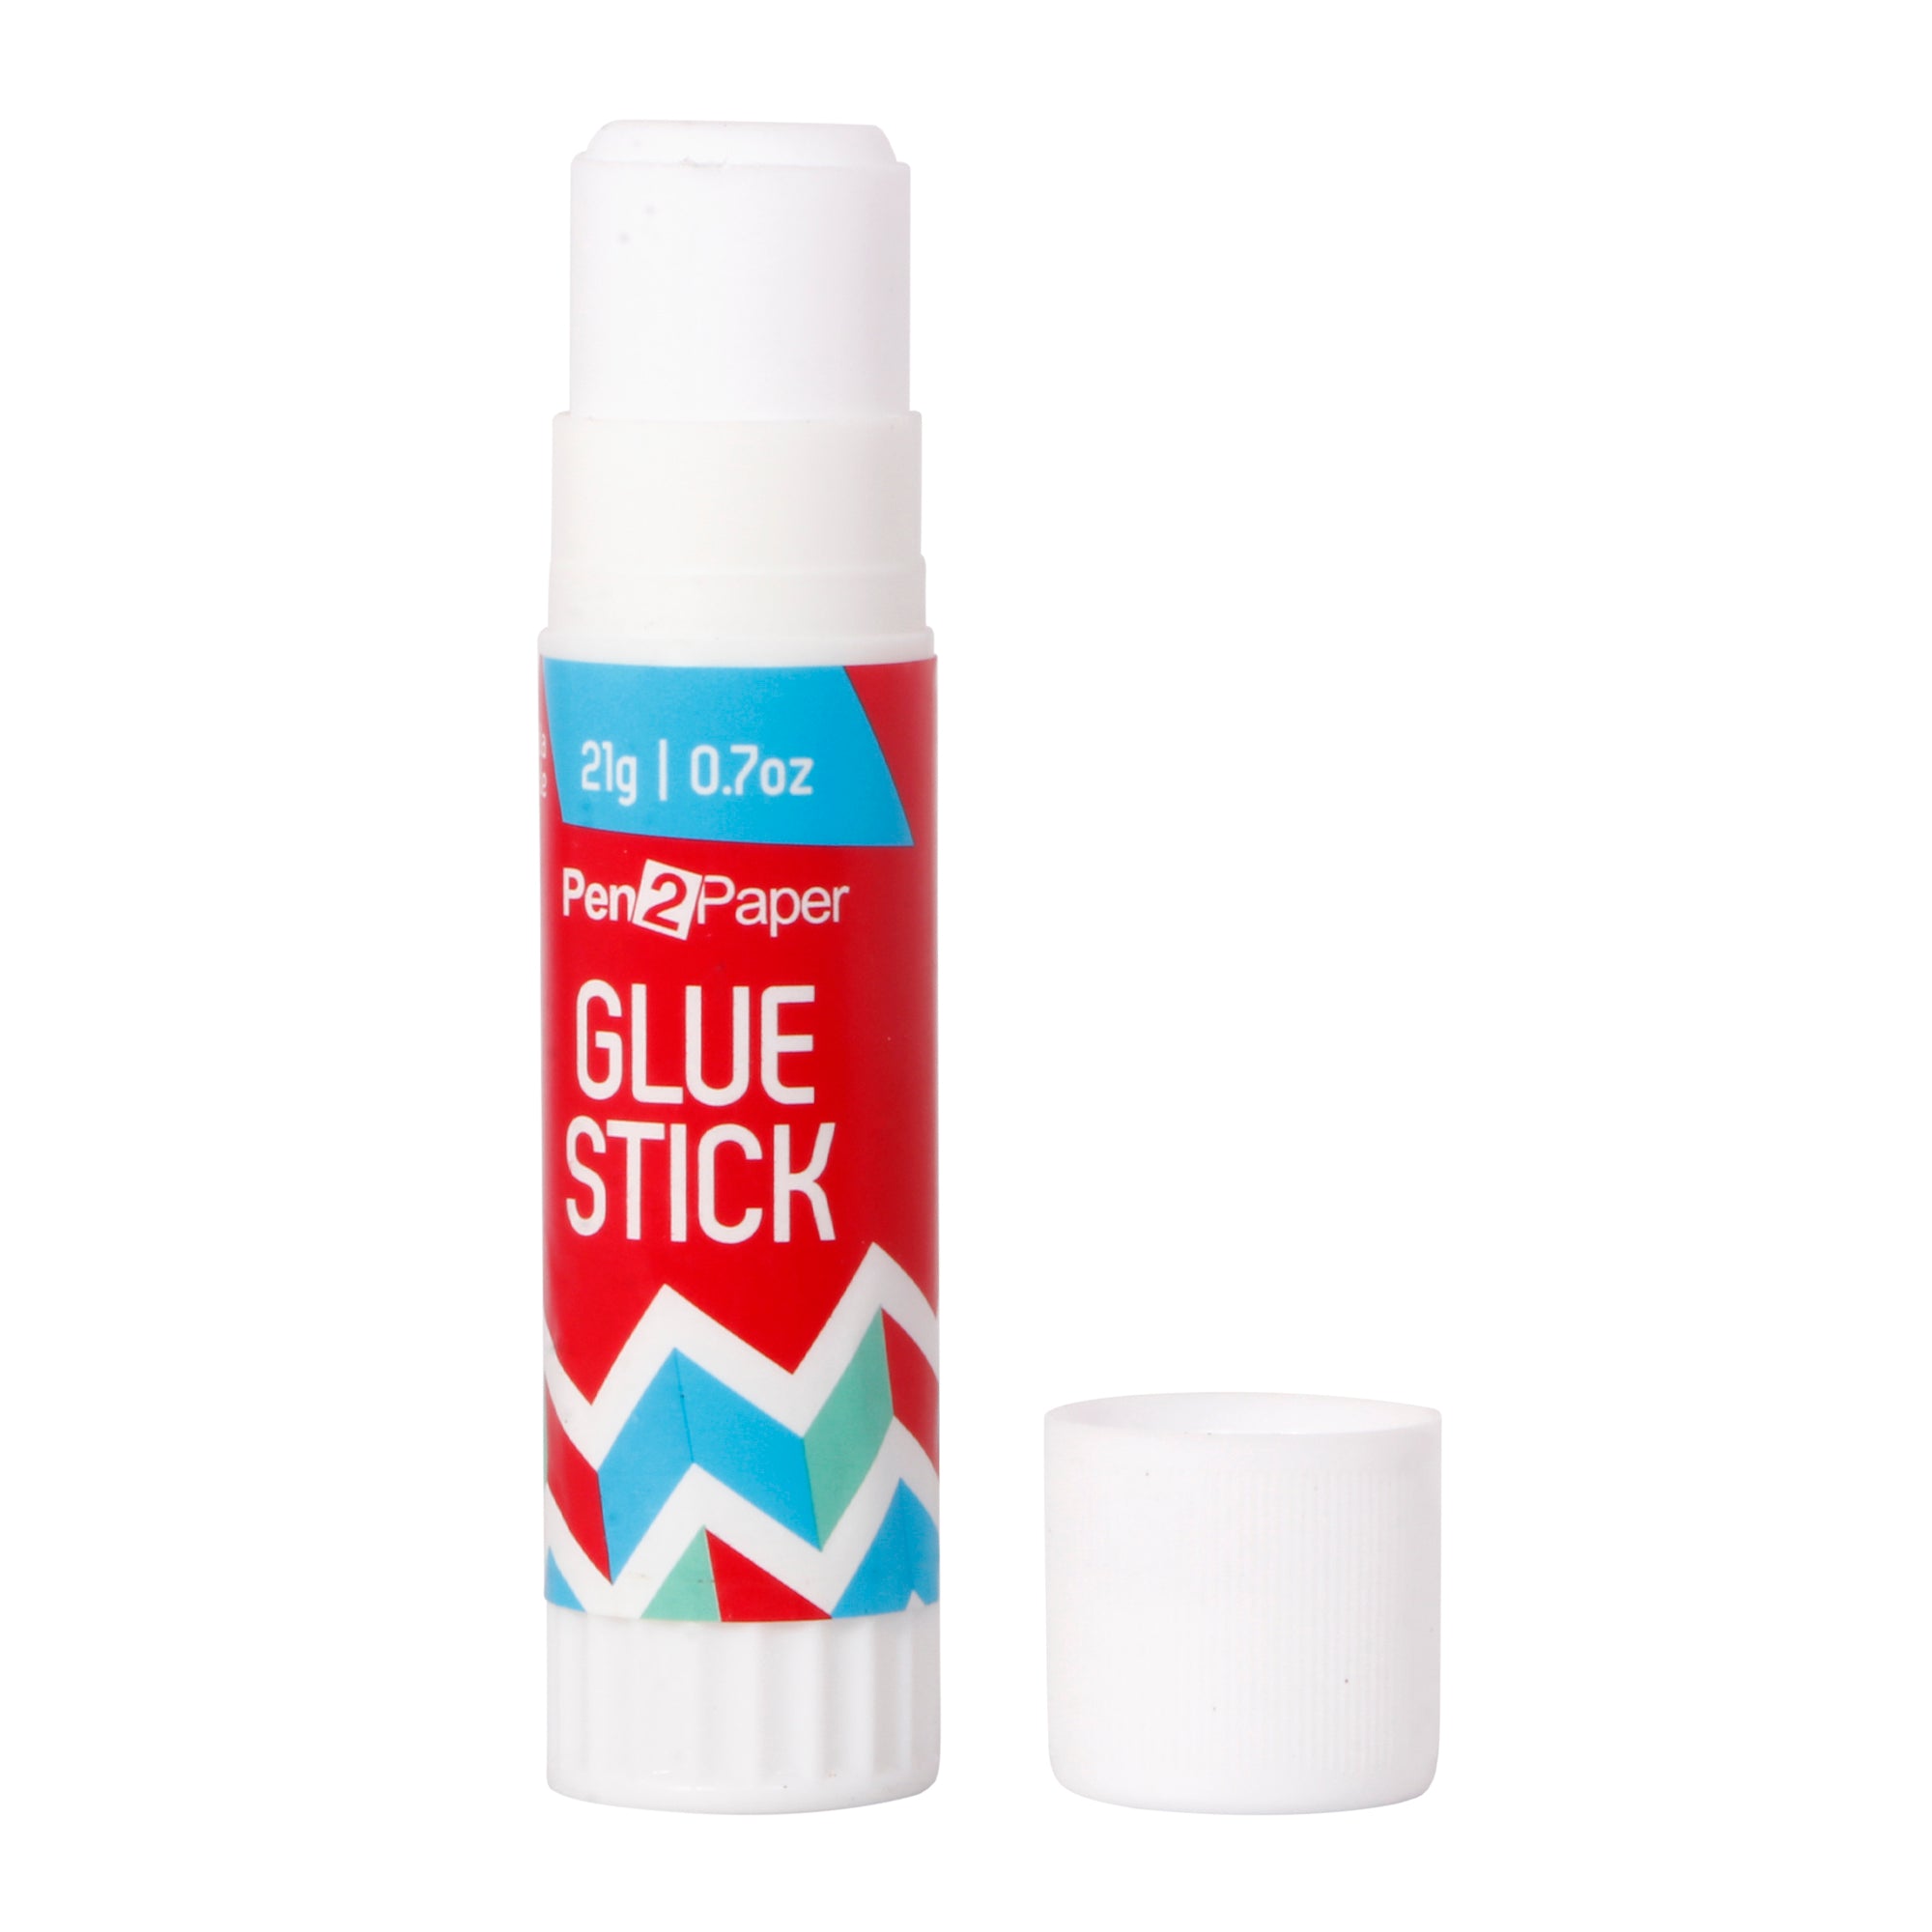 Glue Stick 21G 3Pcs 1Pk Ub